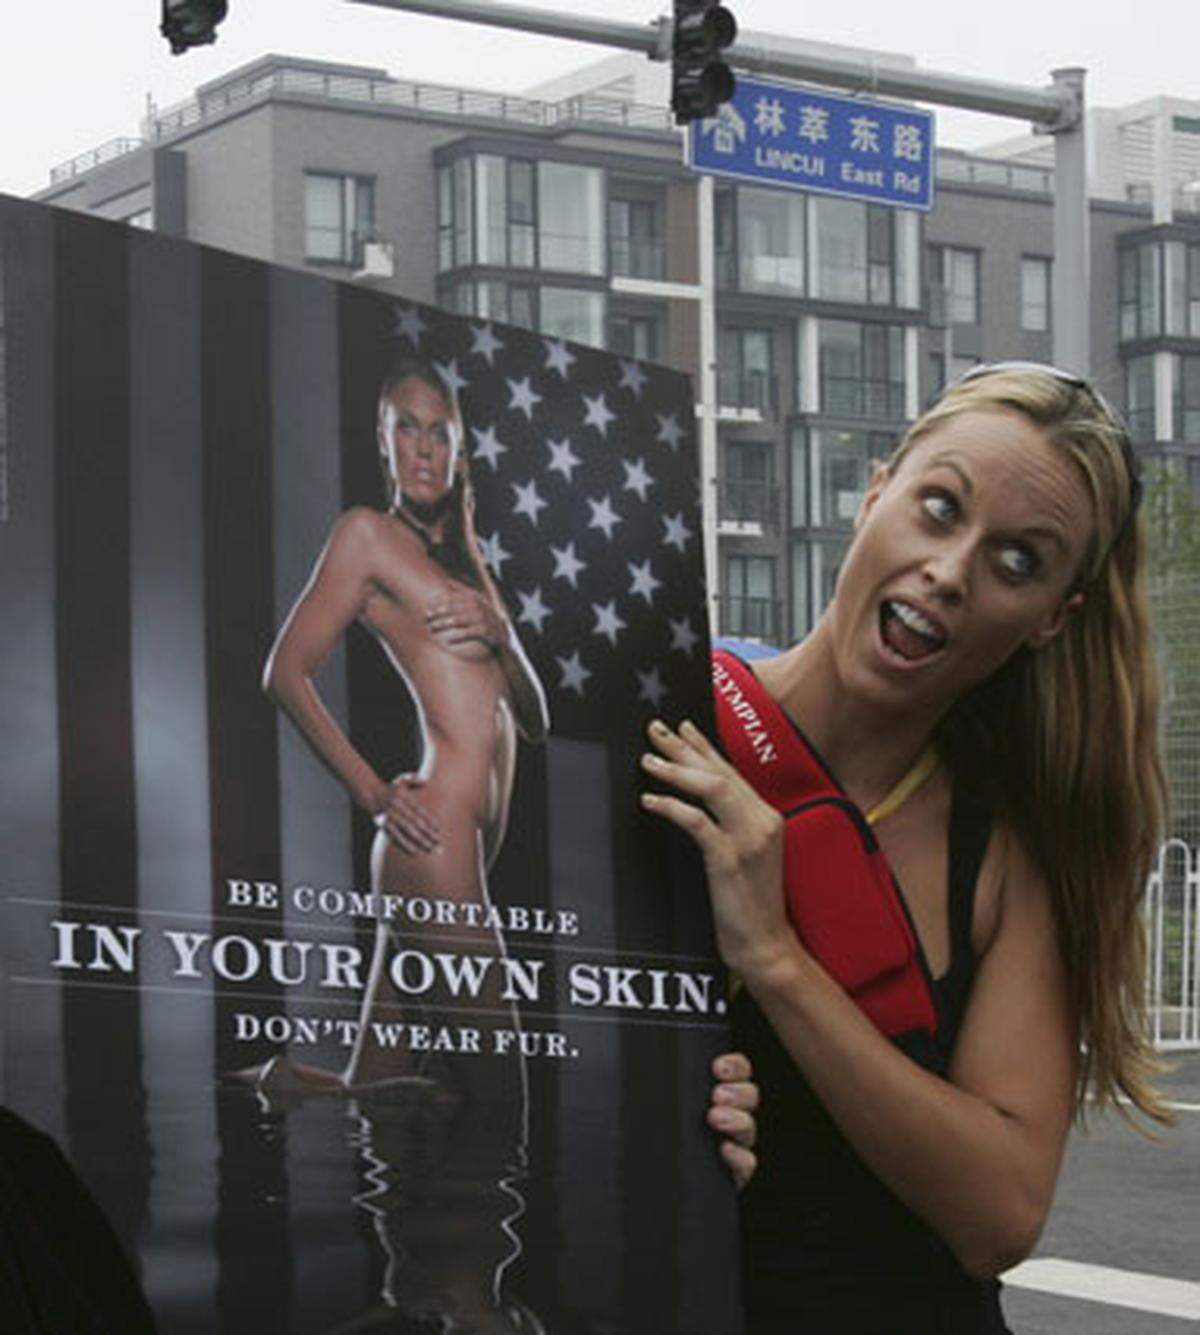 Die 26-jährige Olympiasiegerin hielt im Medienrummel ein Bild von sich im Eva-Kostüm hoch. Amanda Beard half der Tierschutzorganisation Peta bei ihrem Kampf gegen die Pelz-Industrie. China ist einer der größten Fell-Exporteure der Welt.